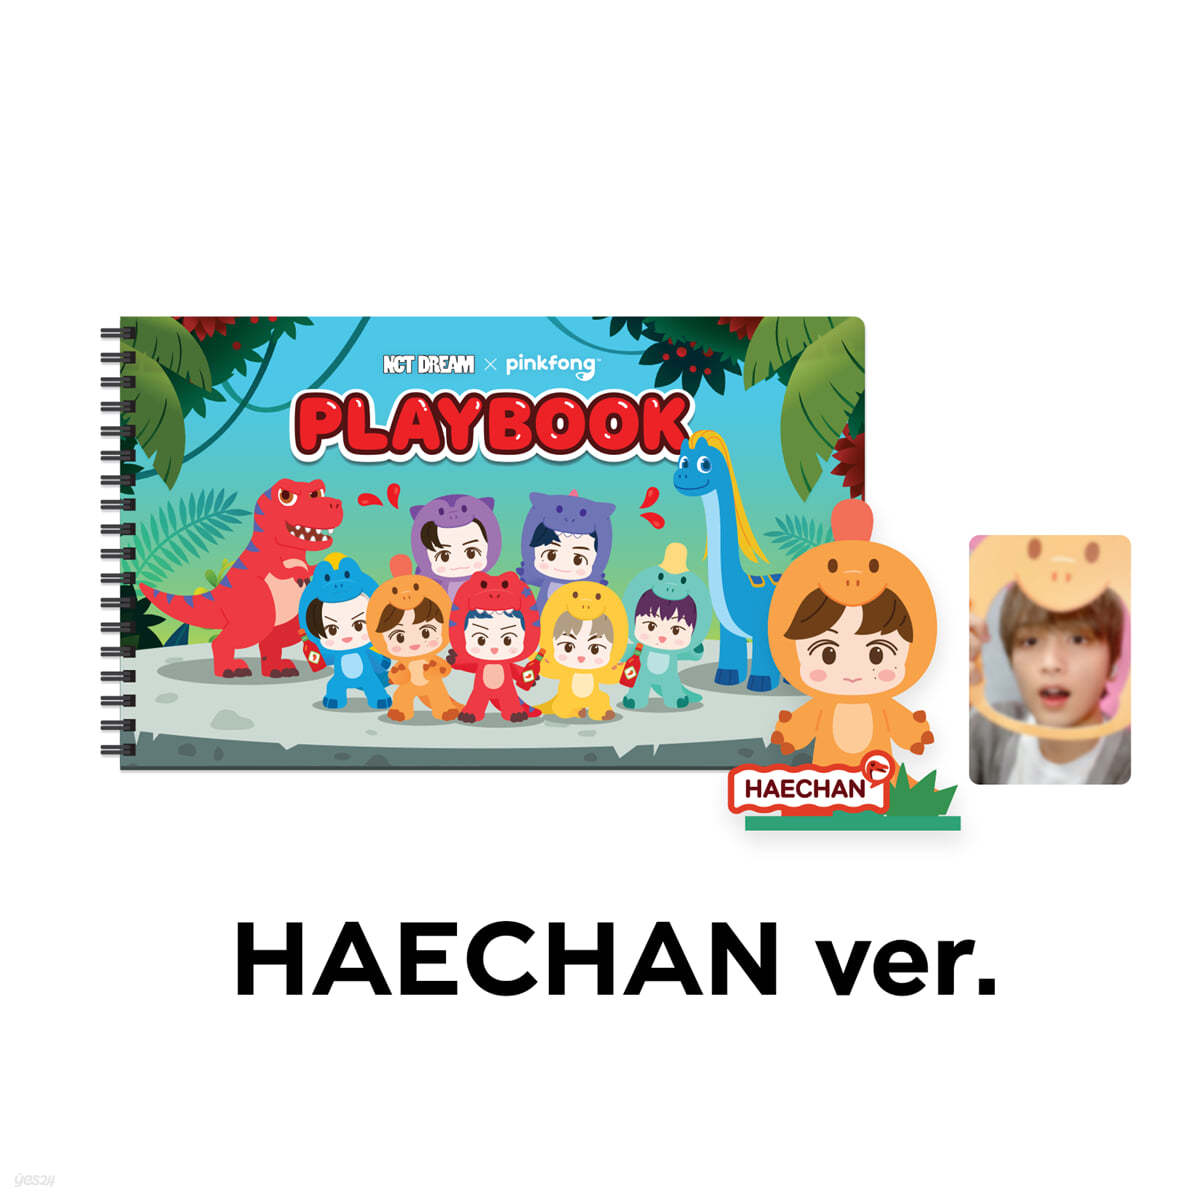 [HAECHAN] PLAYBOOK SET - NCT DREAM X PINKFONG